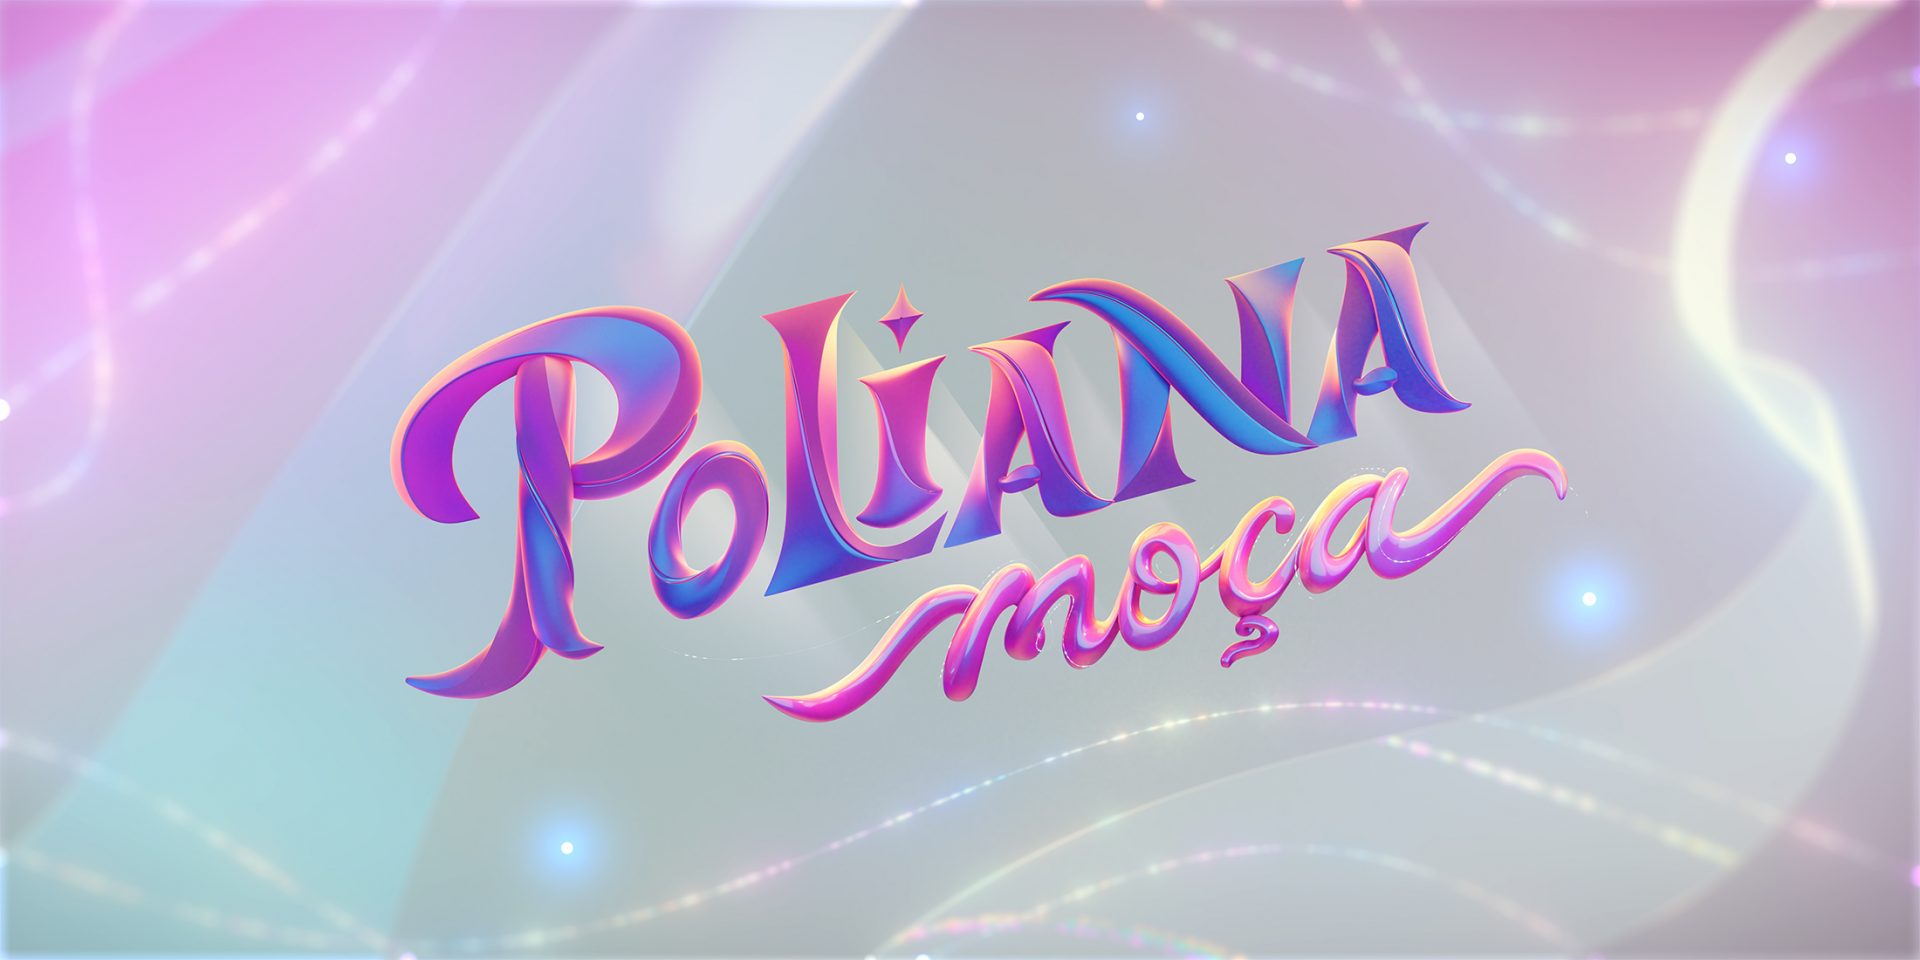 Poliana Moça estreia amanhã! Veja alguns spoilers do primeiro capítulo